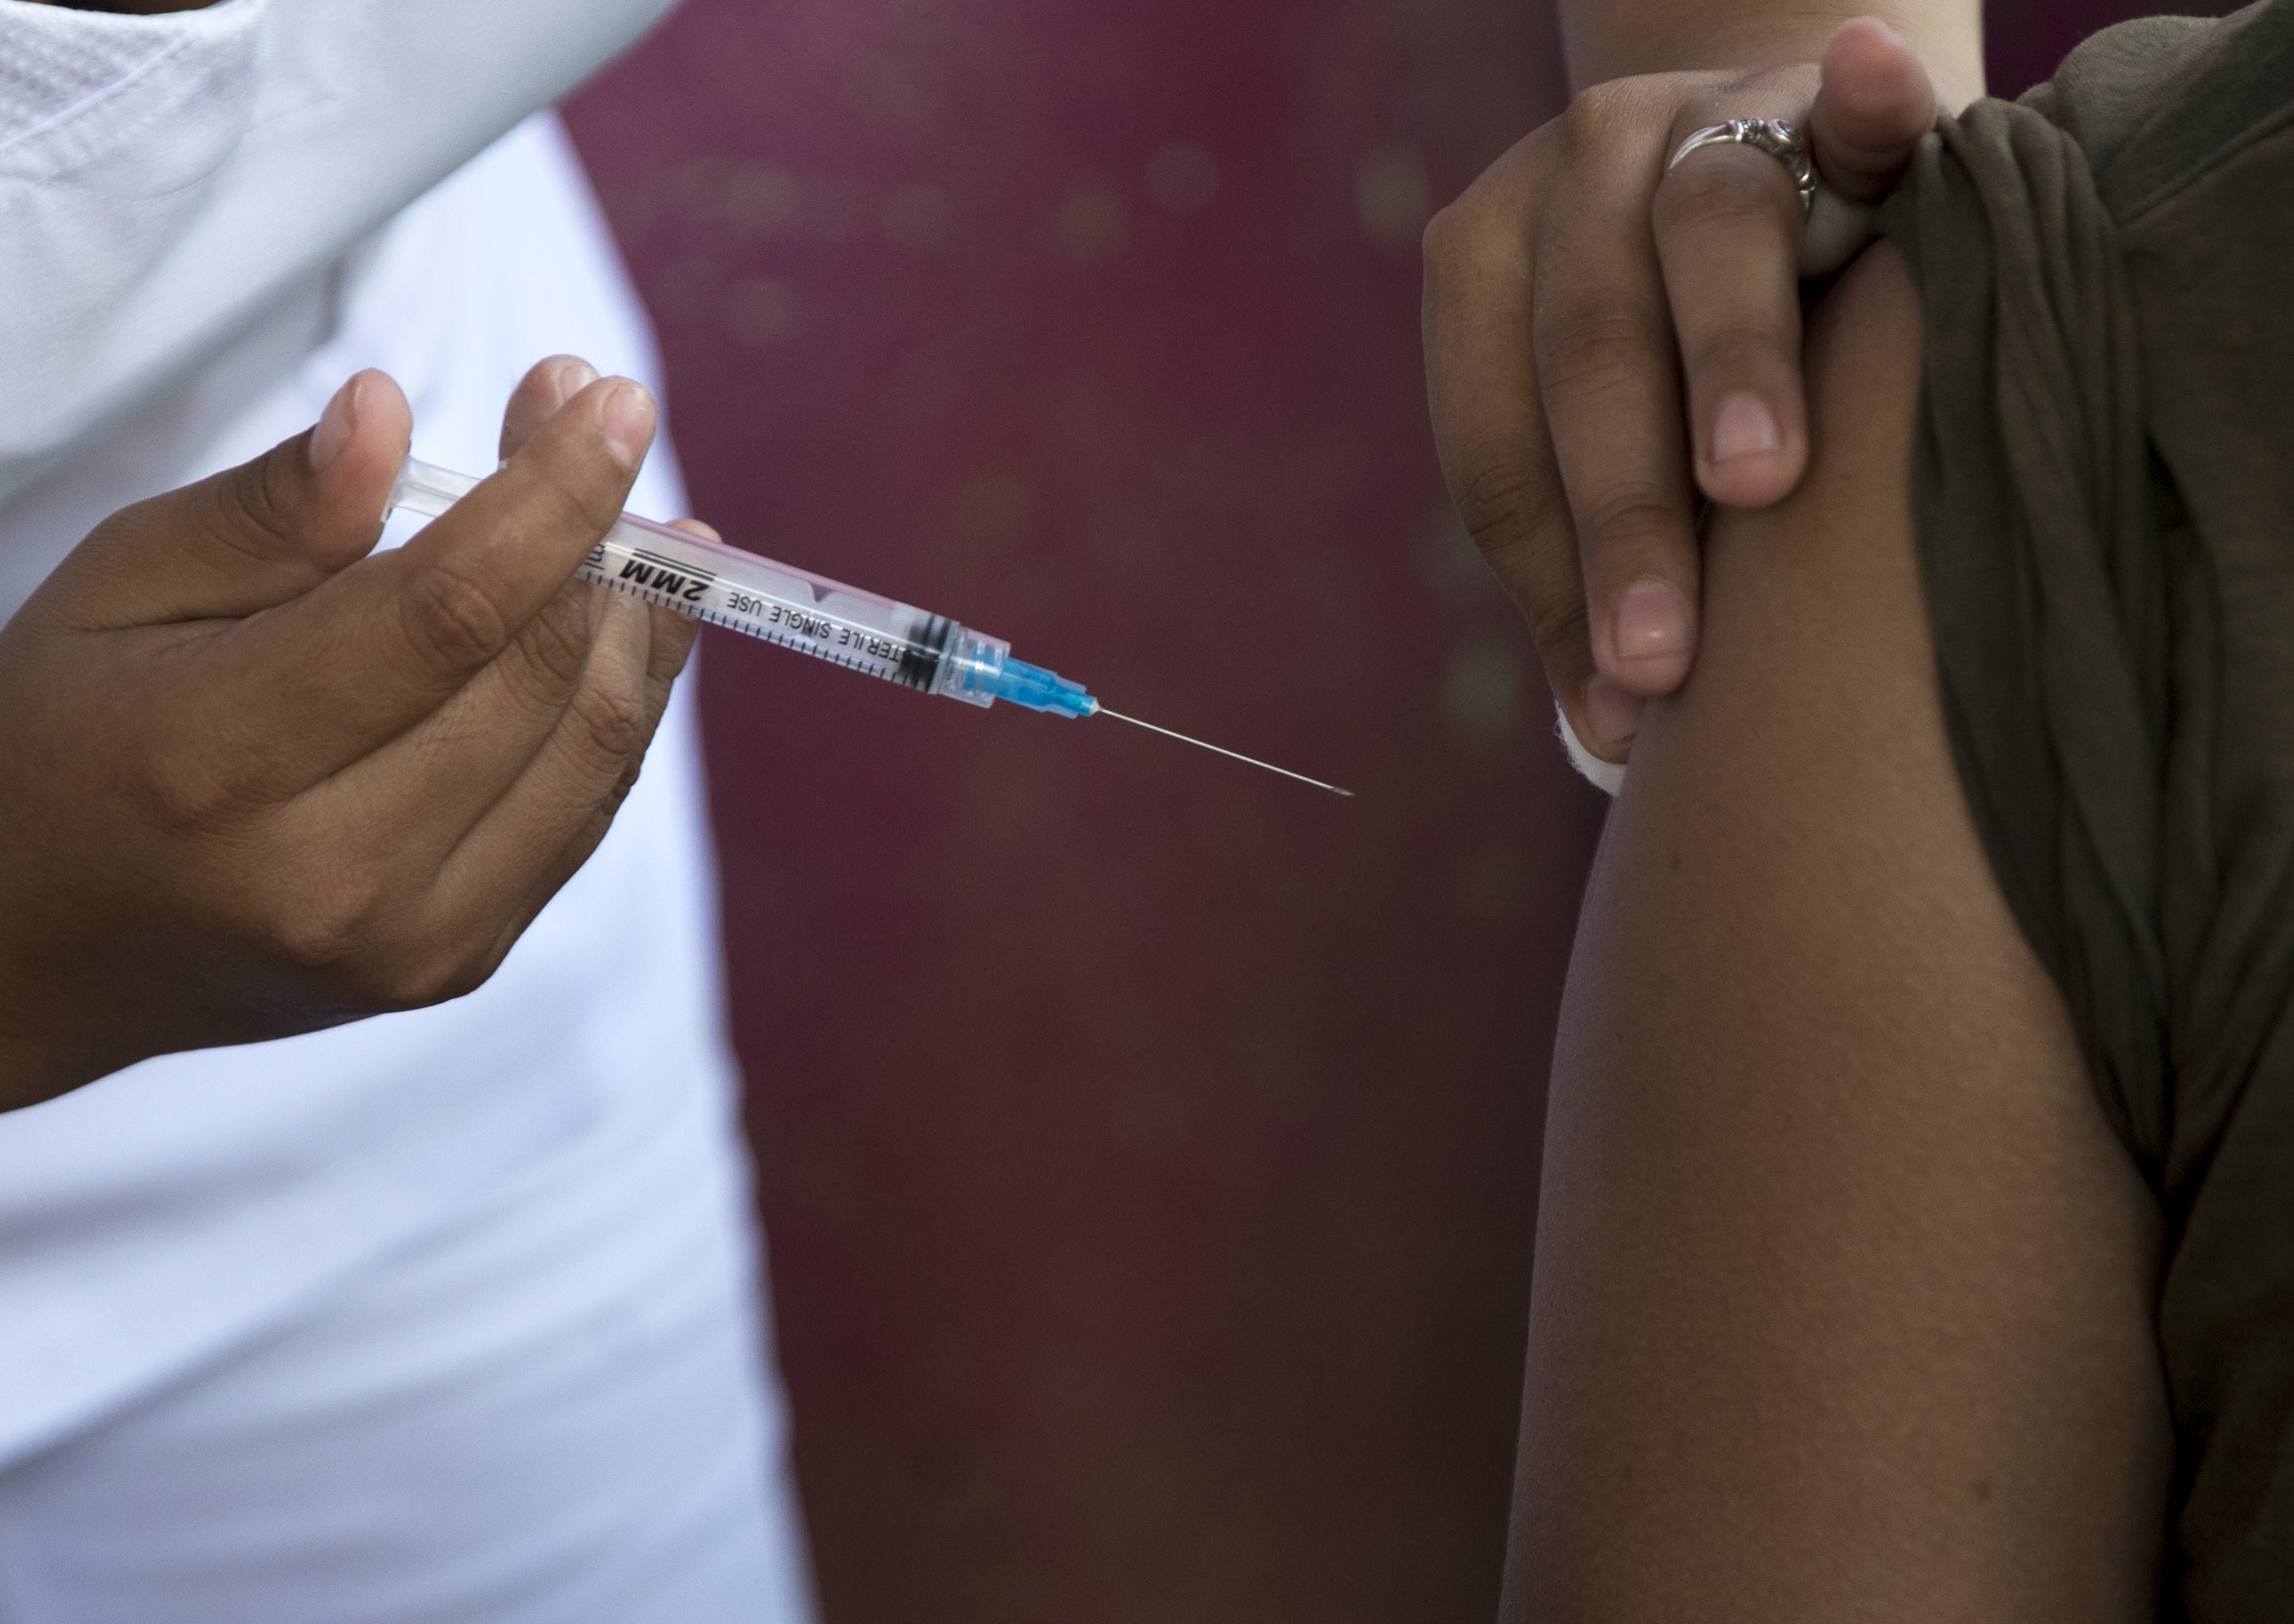 El camino de las vacunas sigue siendo el mejor según los expertos. “Una infección con esta variante en particular no garantiza la protección contra futuras variantes”, explican
EFE/Jorge Torres
